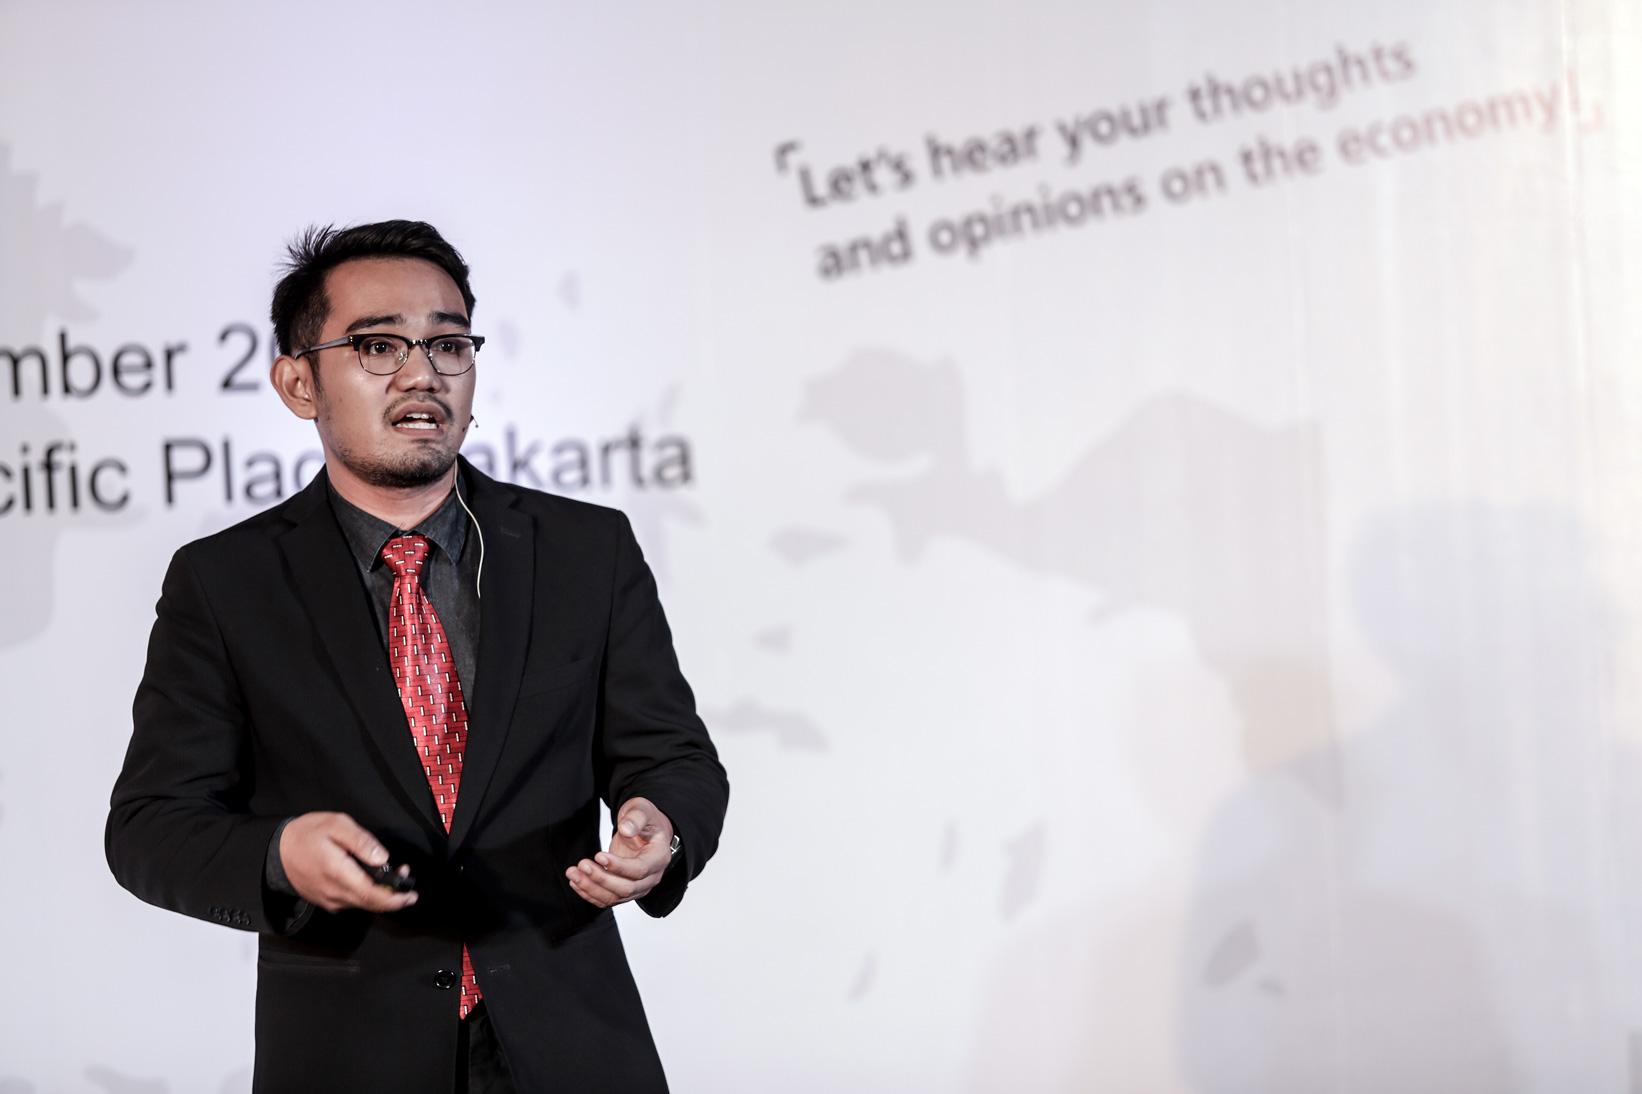 Peserta DBS Young Economist Stand-Up Irman Faiz Univ. Indonesia, Depok mempresentasikan paparannya di hadapan juri yang terdiri dari Faisal Basri, Alanda Kaliza dan Gundy Cahyadi yang diadakan oleh Bank DBS bekerja sama dengan Katadata di Jakarta, Senin (23/11).